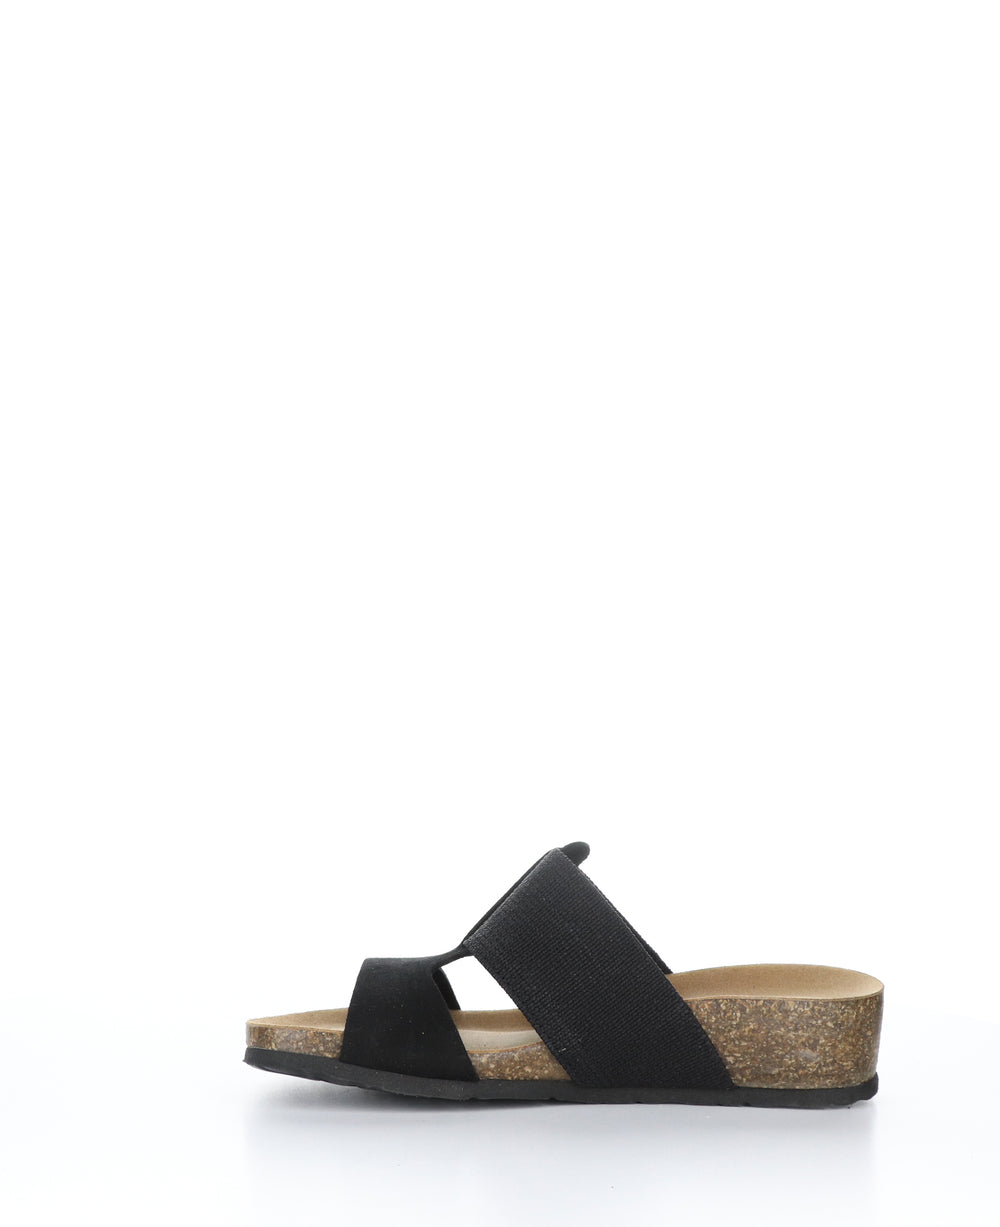 LULU BLACK Wedge Sandals|LULU Sandales Compensées in Noir